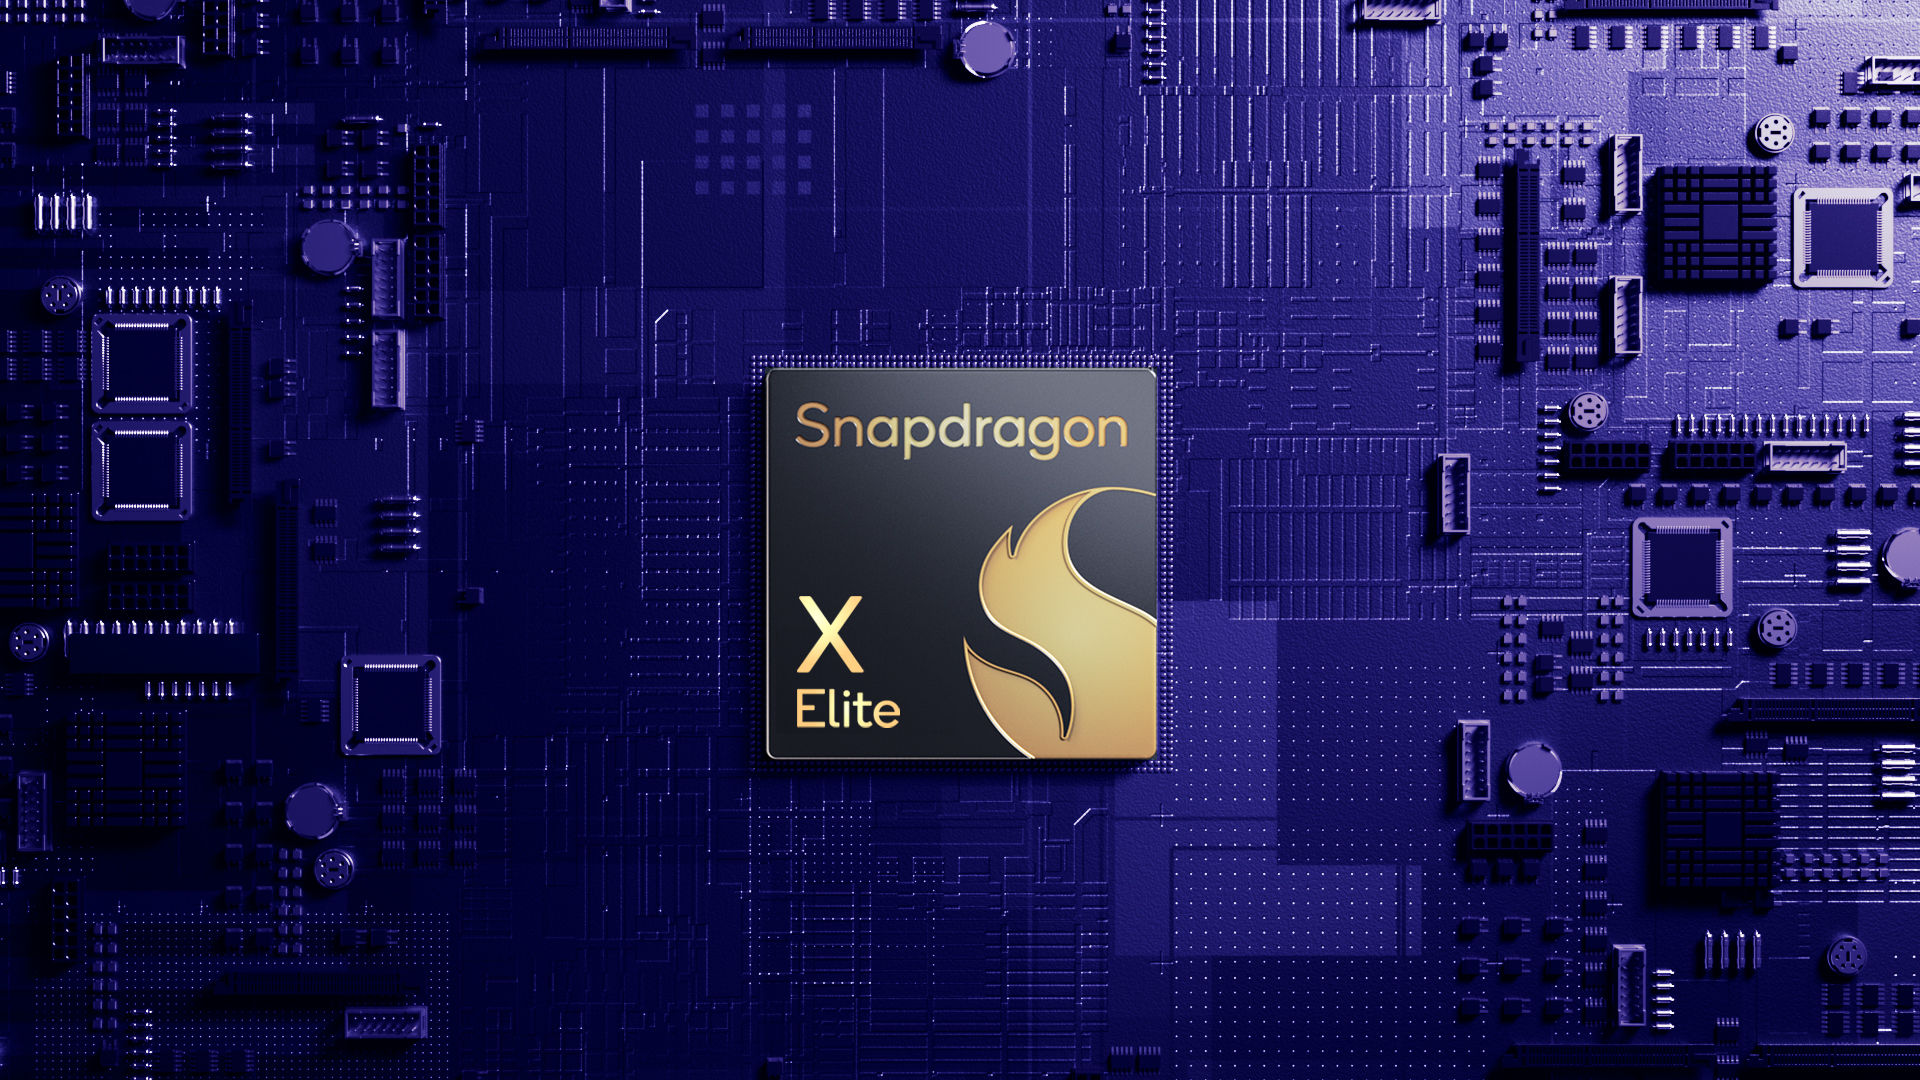 Les déclarations de Qualcomm concernant les performances de la puce Snapdragon X Elite n'étaient pas tout à fait honnêtes